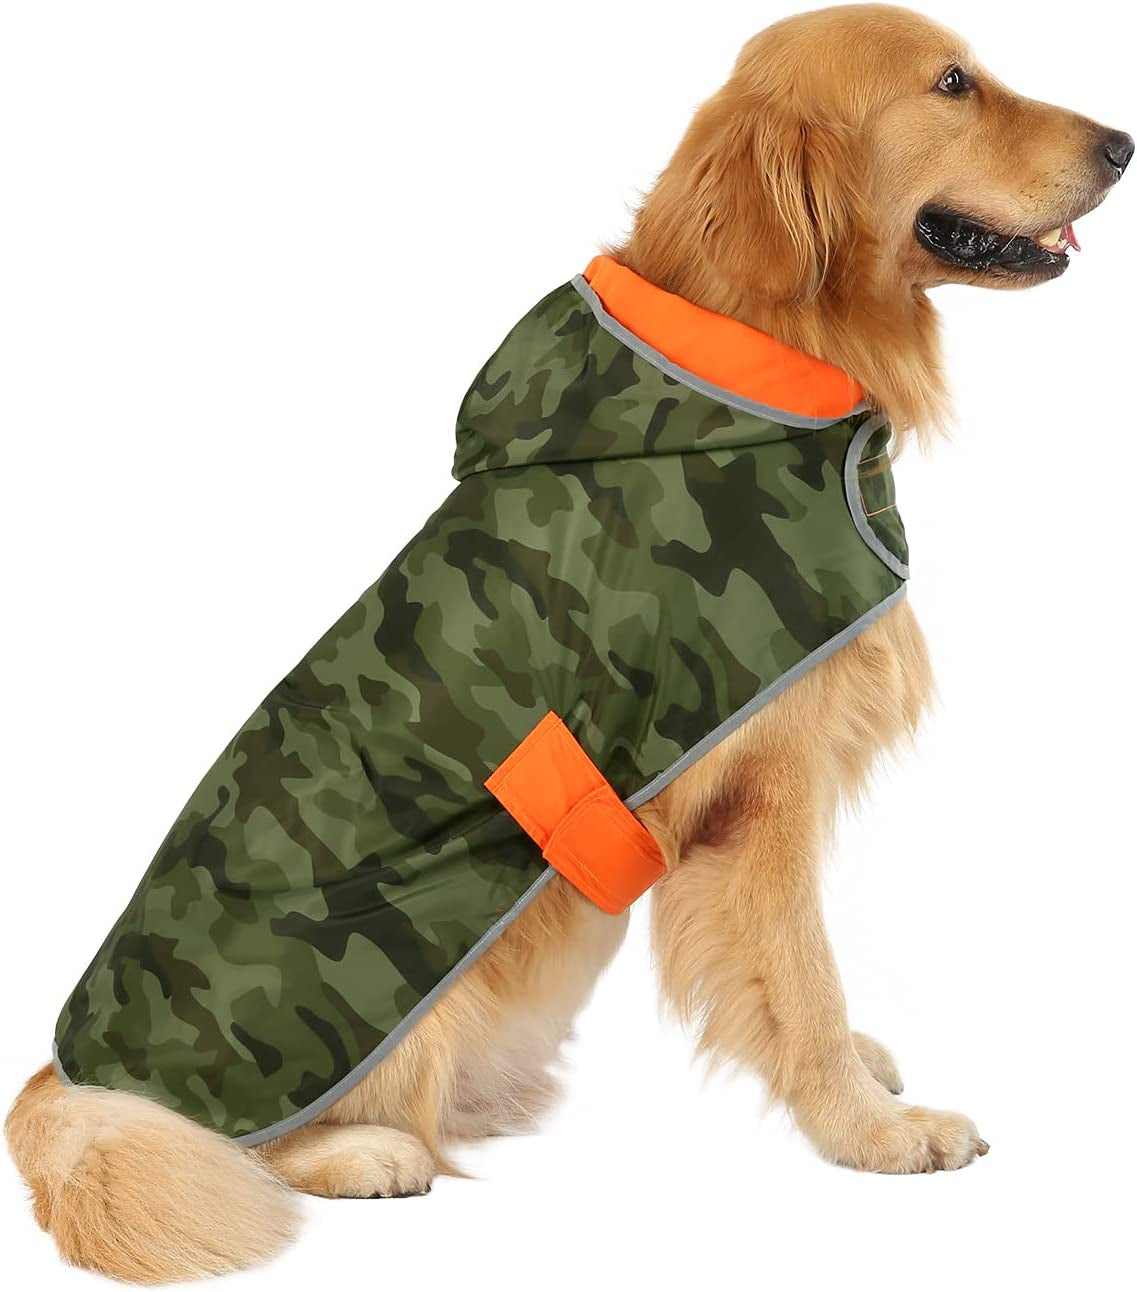 Reversible Dog Raincoat Hooded Slicker Poncho Rain Coat Jacket for Small Medium Large Dogs Camo Orange - L